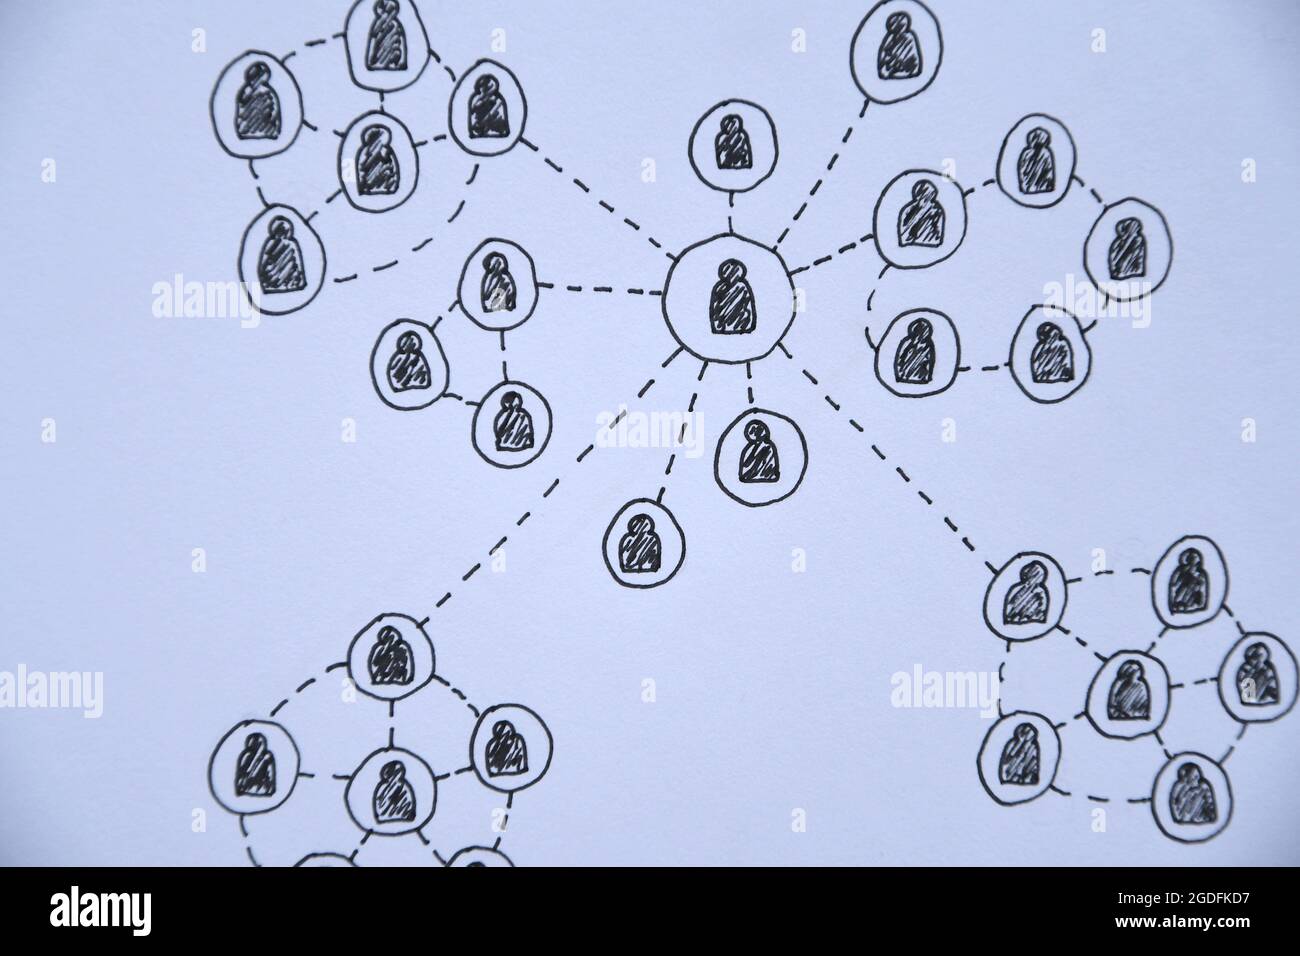 Foto einer Zeichnung eines sozialen Netzwerks auf einem Notizbuch Stockfoto